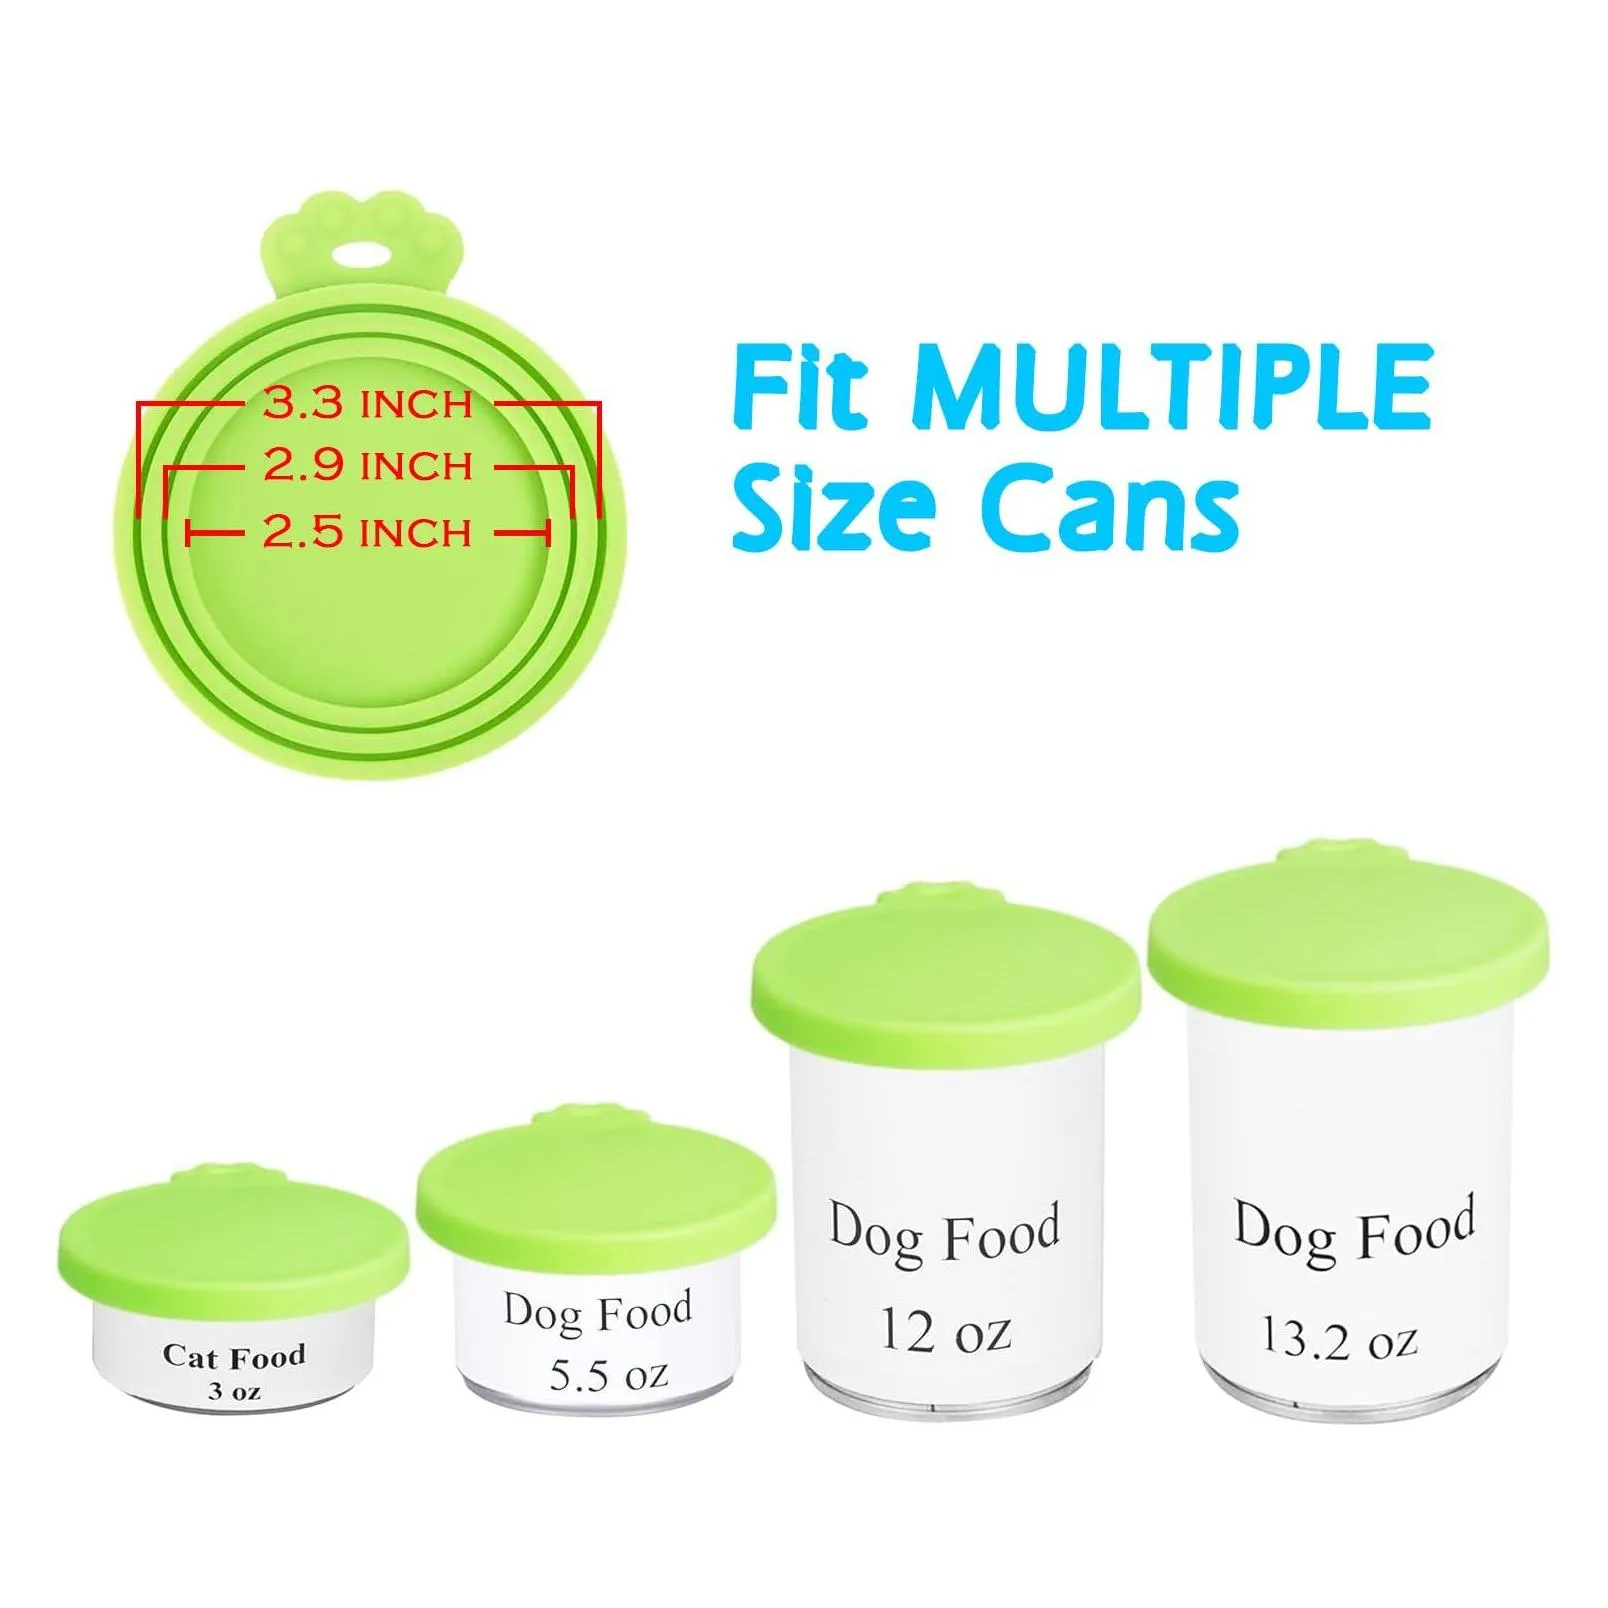 Dog Bowls & Feeders Sile Pet Can Lids Cat Food Er Size Tops 1 Fit 3 Standard Cans Bpa Dishwasher Safe Drop Delivery Home Garden Suppli Dhl38